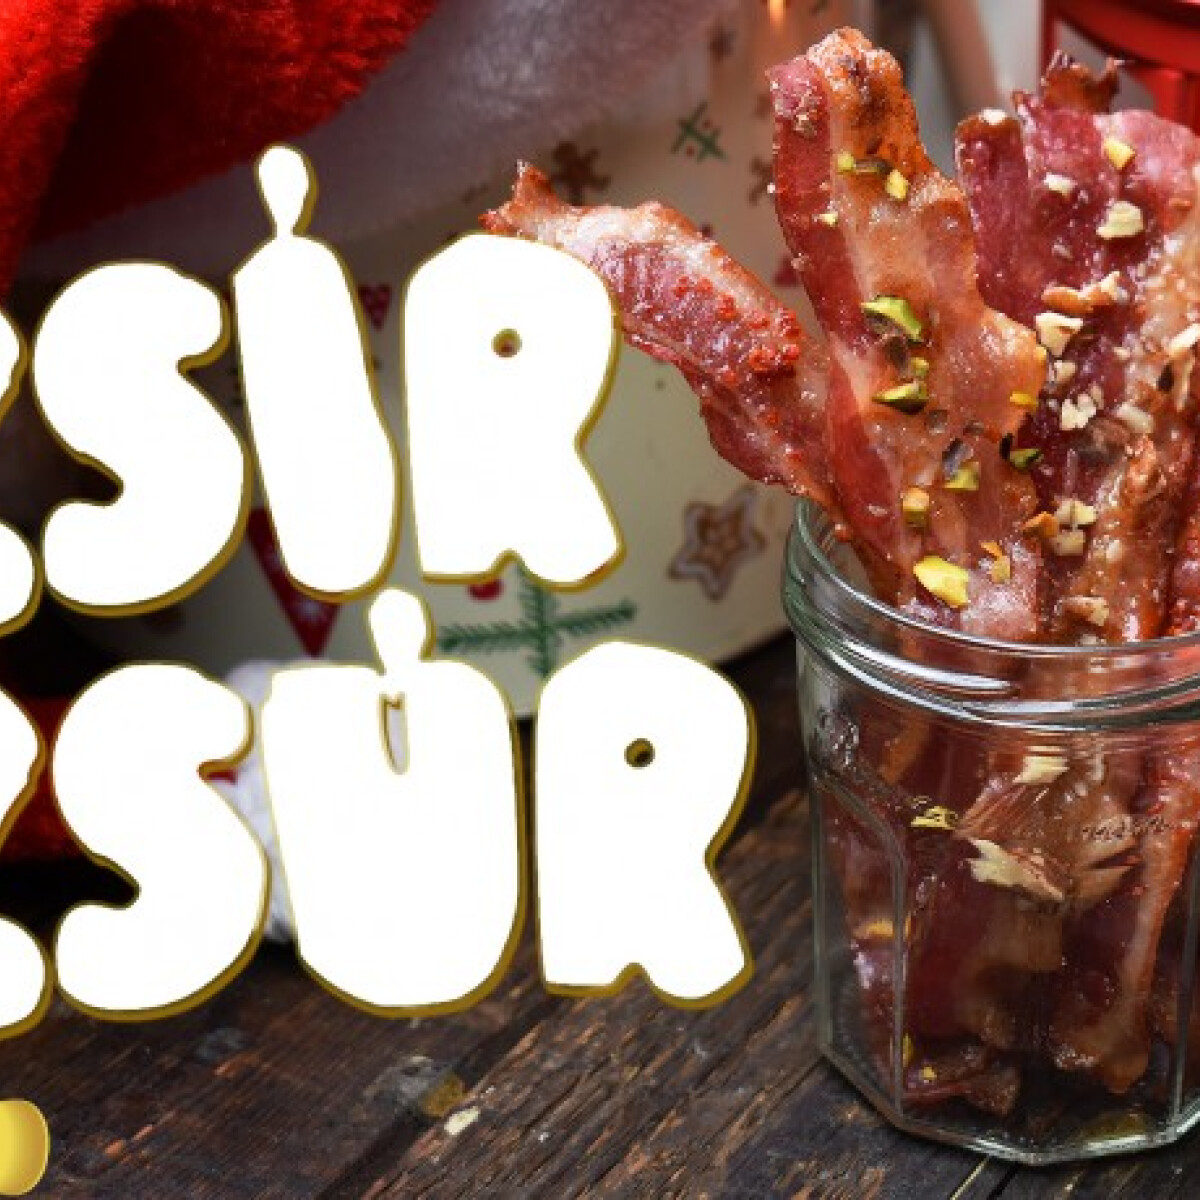 ZSÍRZSÚR: exkluzív karácsonyi cukor- és zsírdömping - Kandírozott bacont csináltunk!